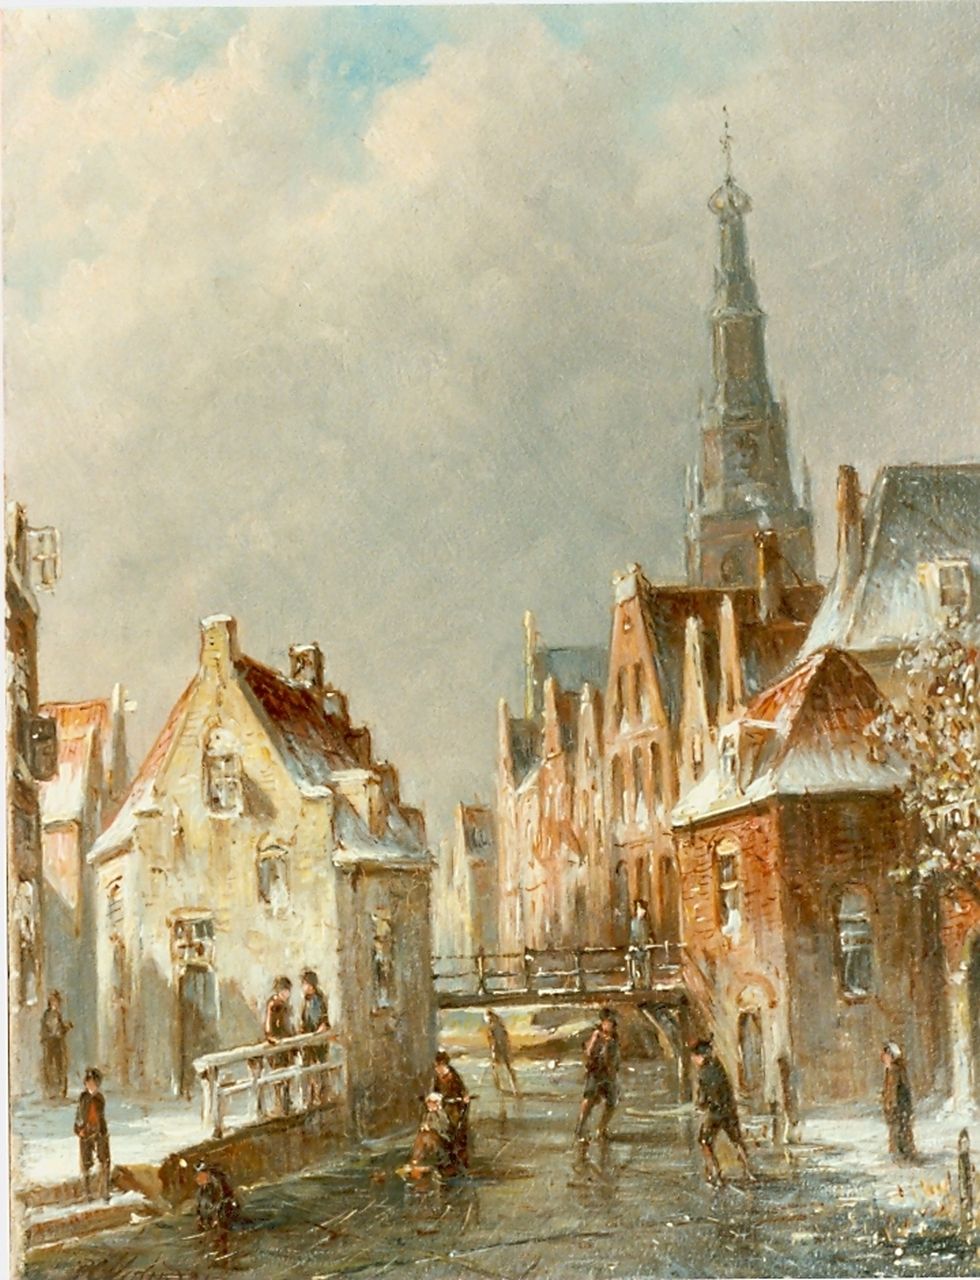 Vertin P.G.  | Petrus Gerardus Vertin, Stadsgracht met schaatsers, olieverf op paneel 24,0 x 19,4 cm, gesigneerd linksonder